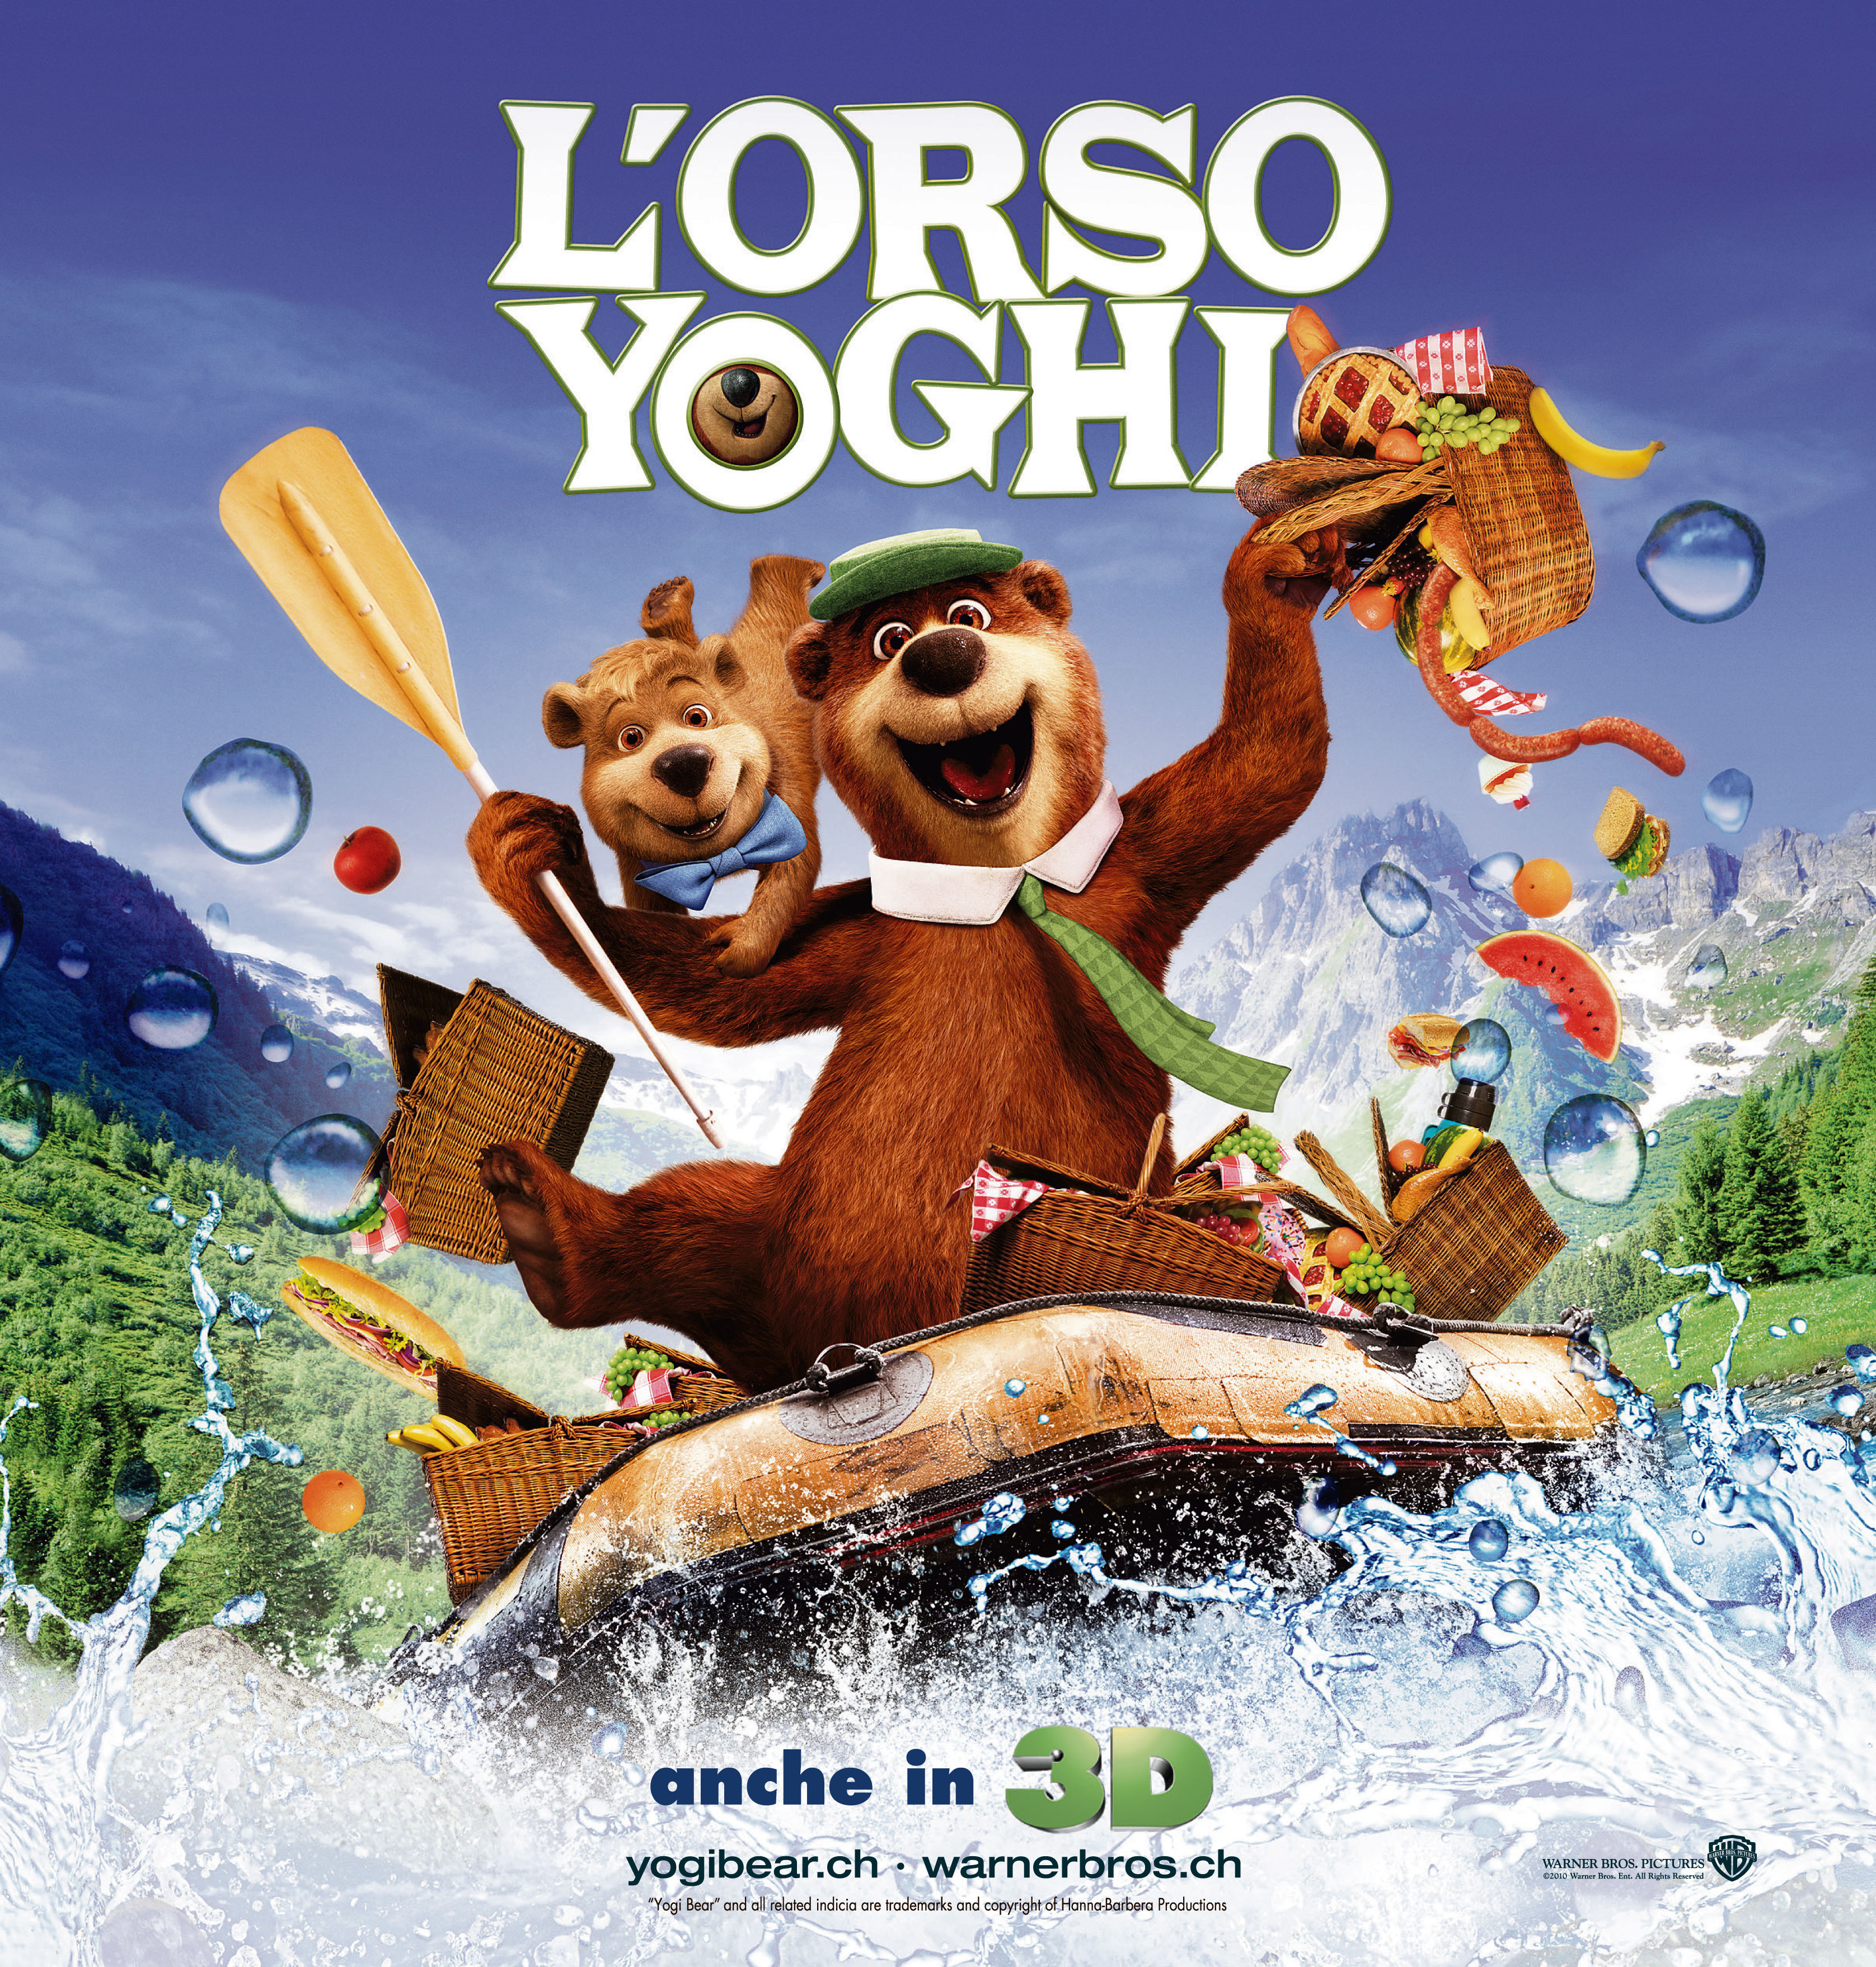 el-oso-yogui-espa-ol-english-new-dvd-releases-this-month-filesgain